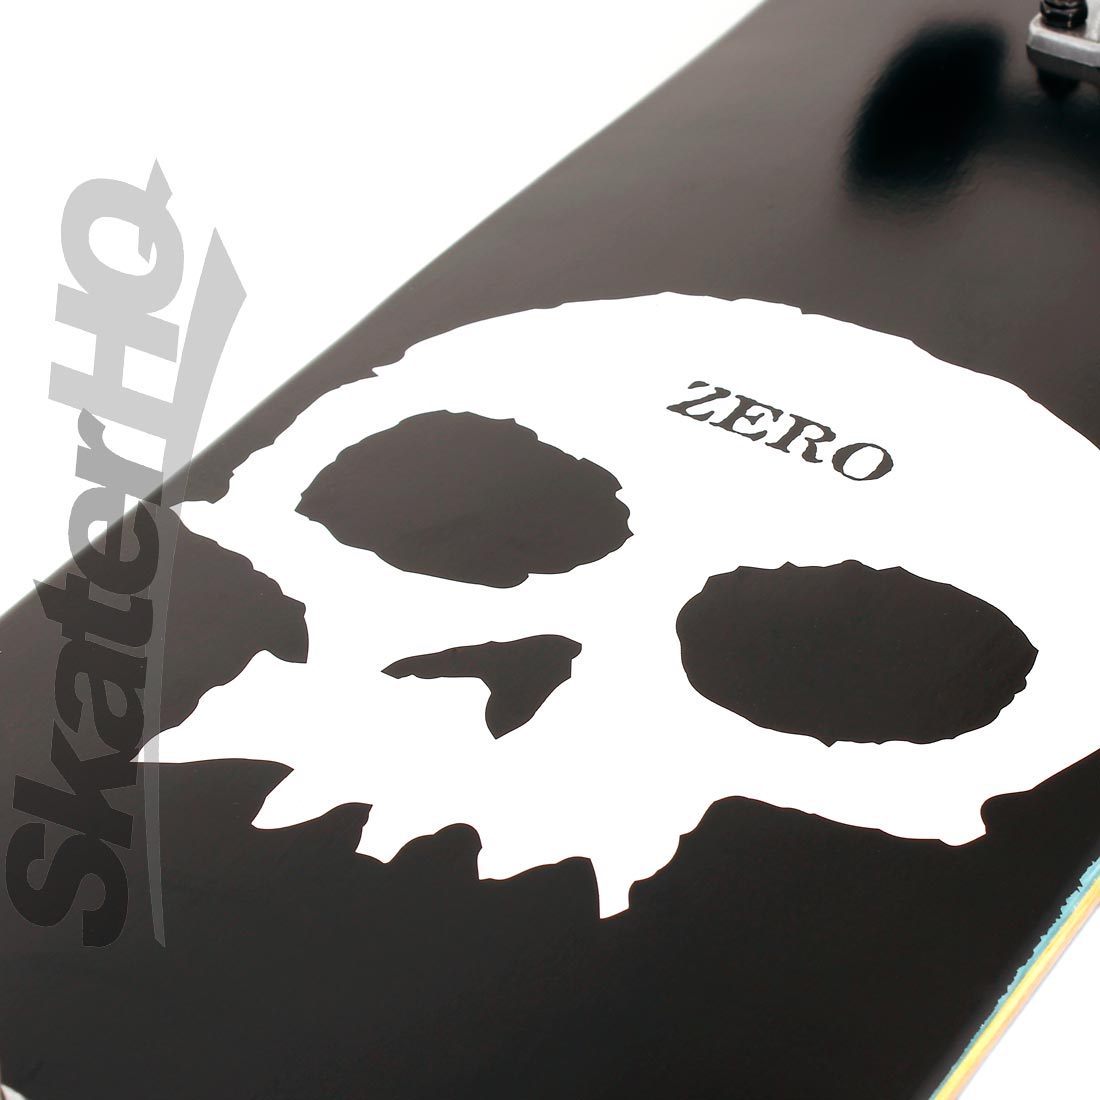 Zero Skull 7.5 Complete Skateboard Completes Modern Street